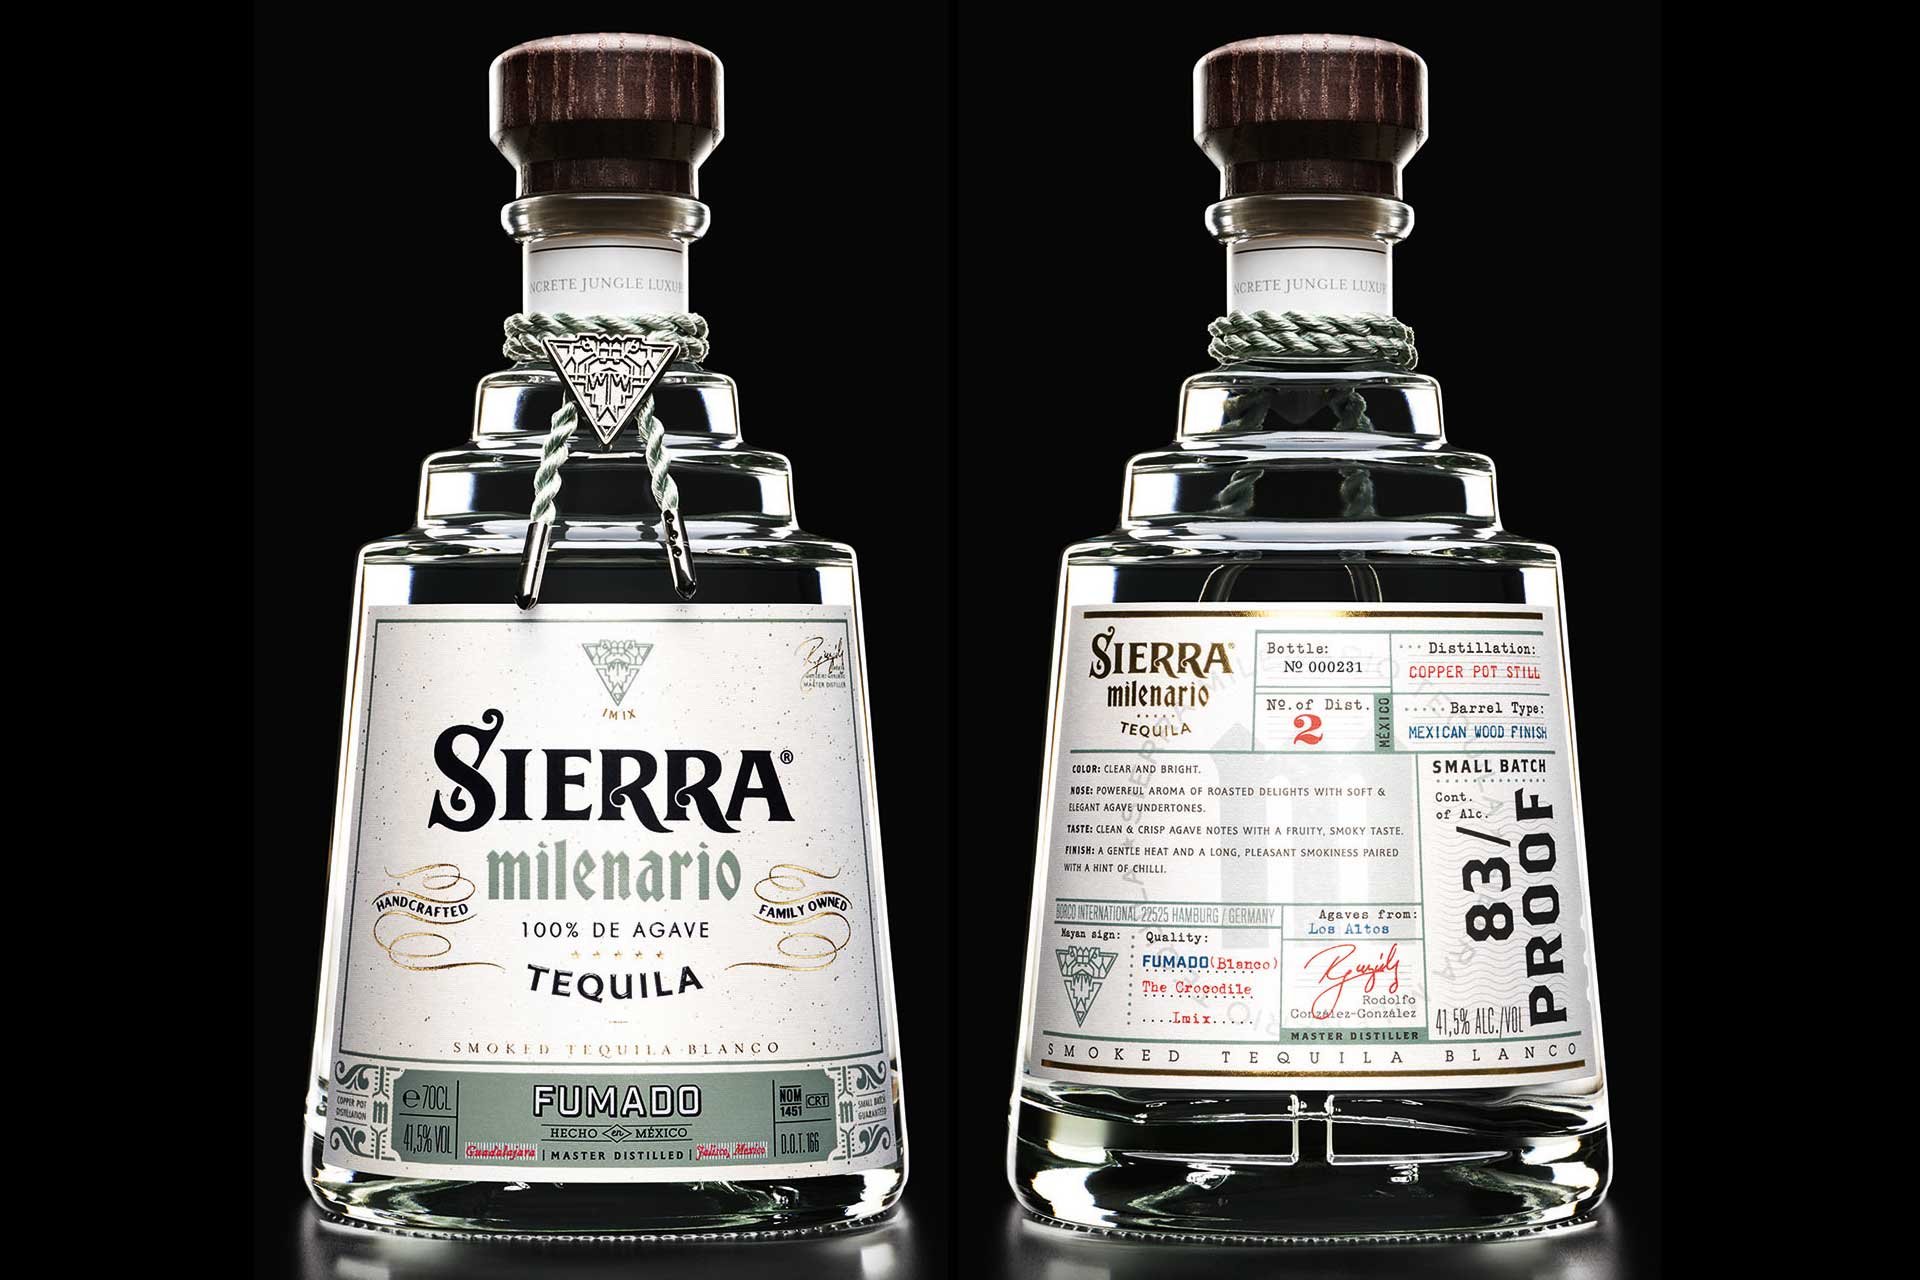 Detaillierte Informationen zur Herstellung und Verkostung zieren ab sofort die Sierra Milenario Flaschen.